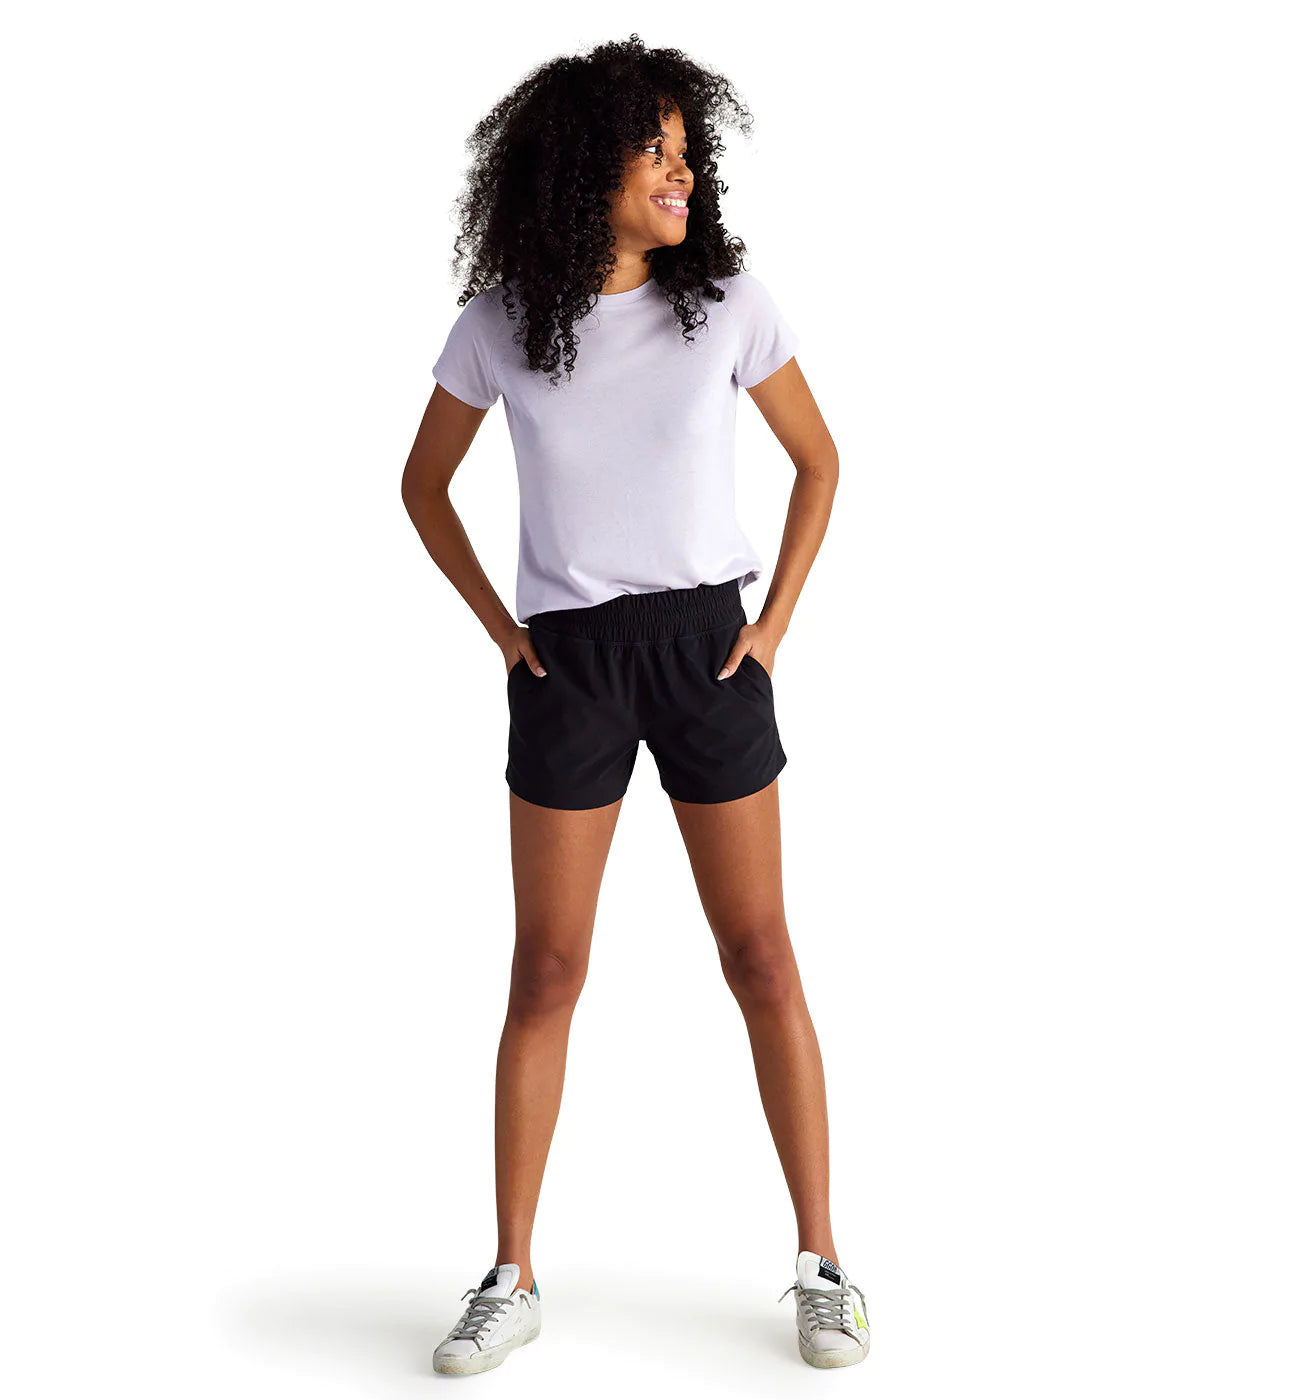 Did Gigi Hadid Just Make Bermuda Shorts … Happen? | Shorts outfits women,  Summer shorts outfits, Short outfits